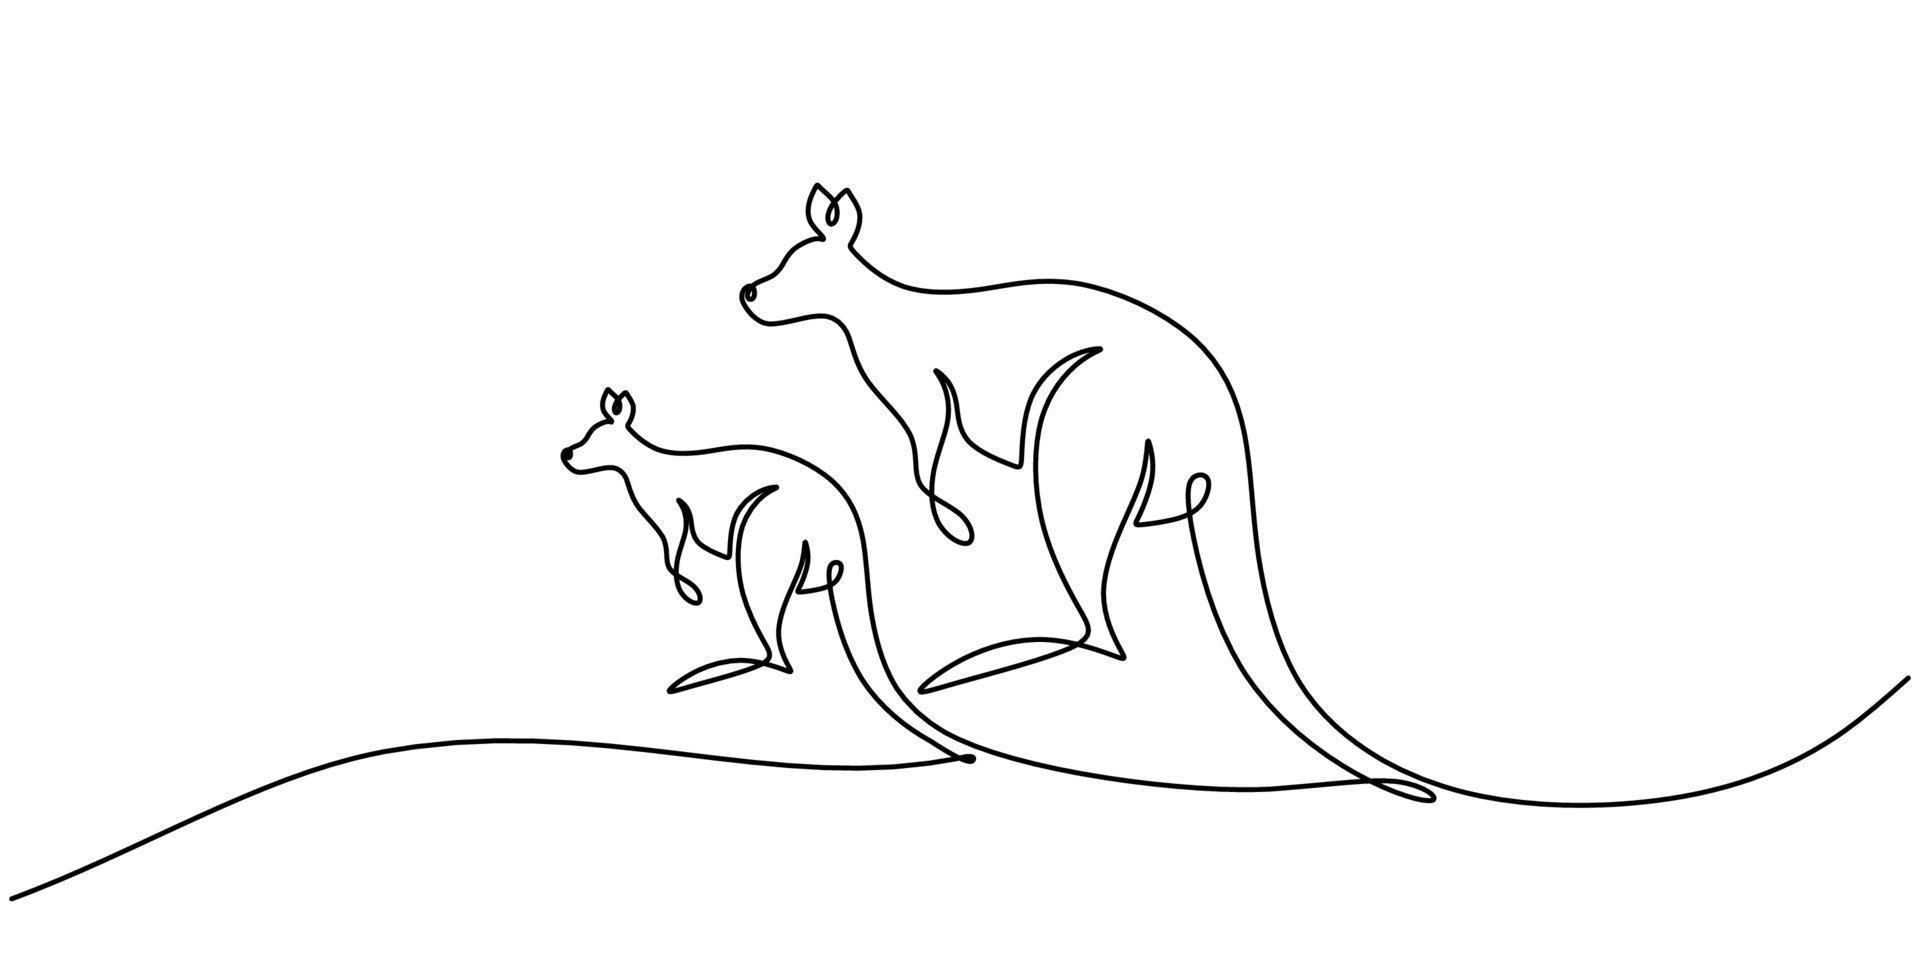 continu één enkele lijn van twee kangoeroes die staan voor australië dag vector